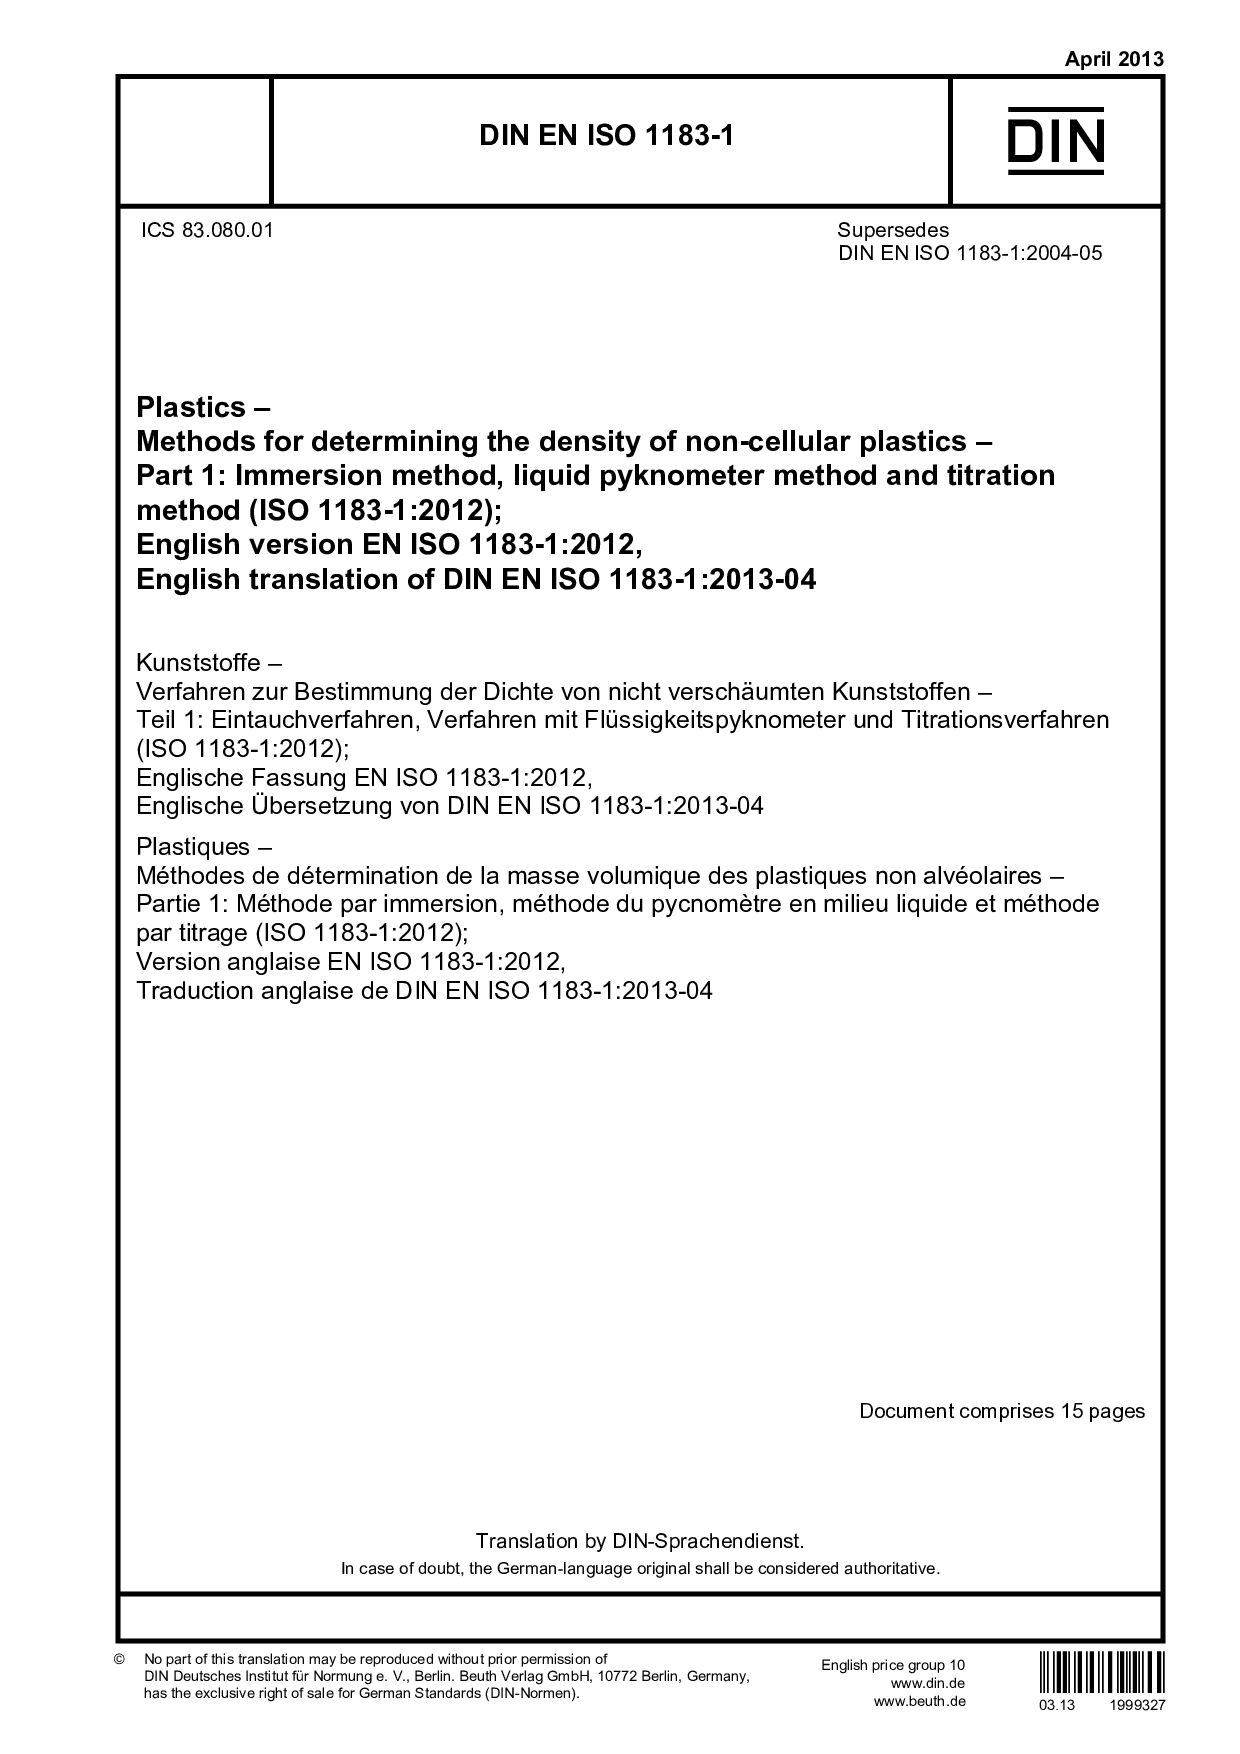 DIN EN ISO 1183-1:2013封面图